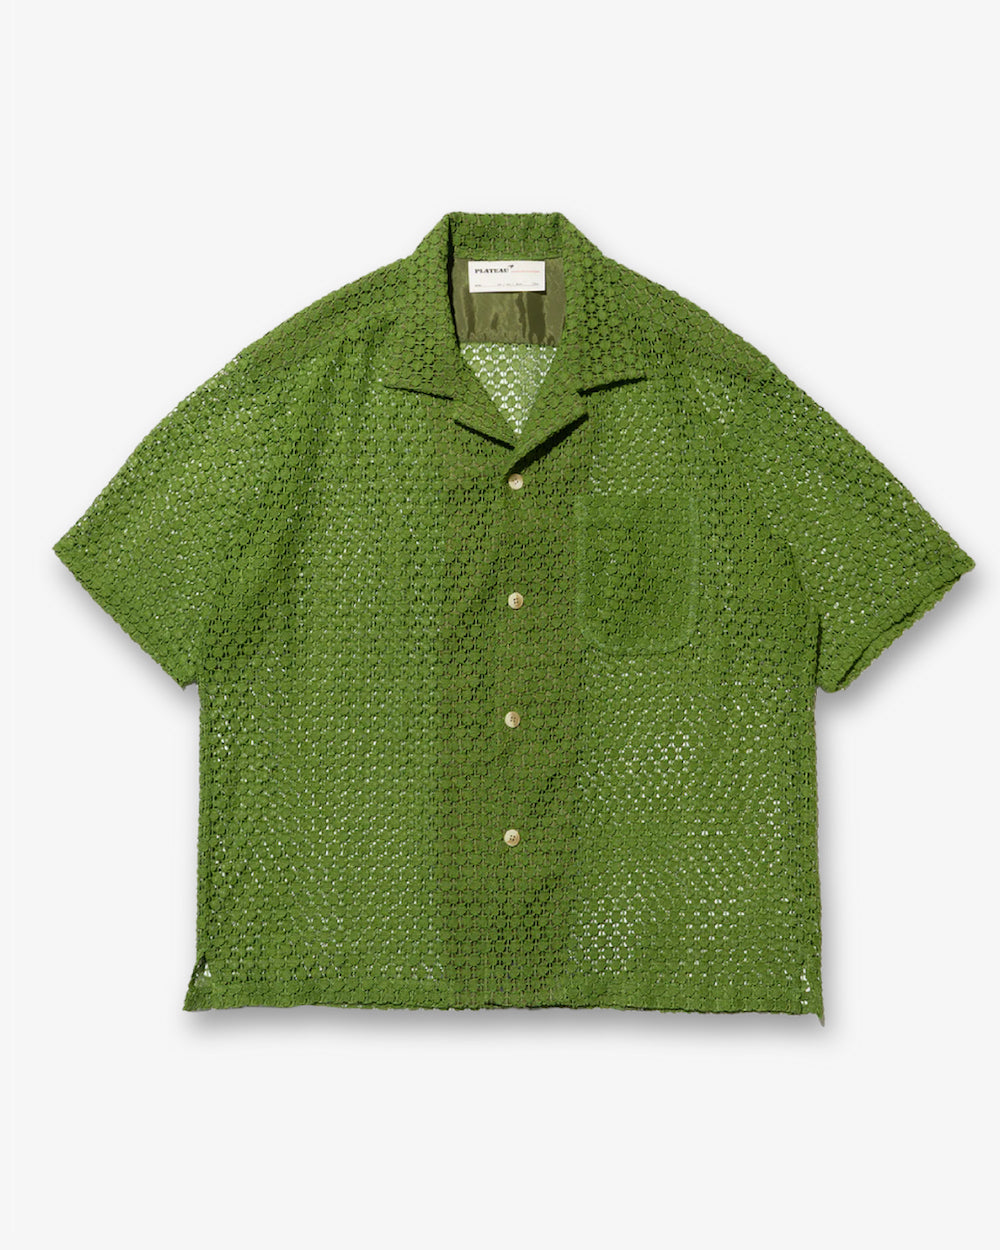 grass lace shirt